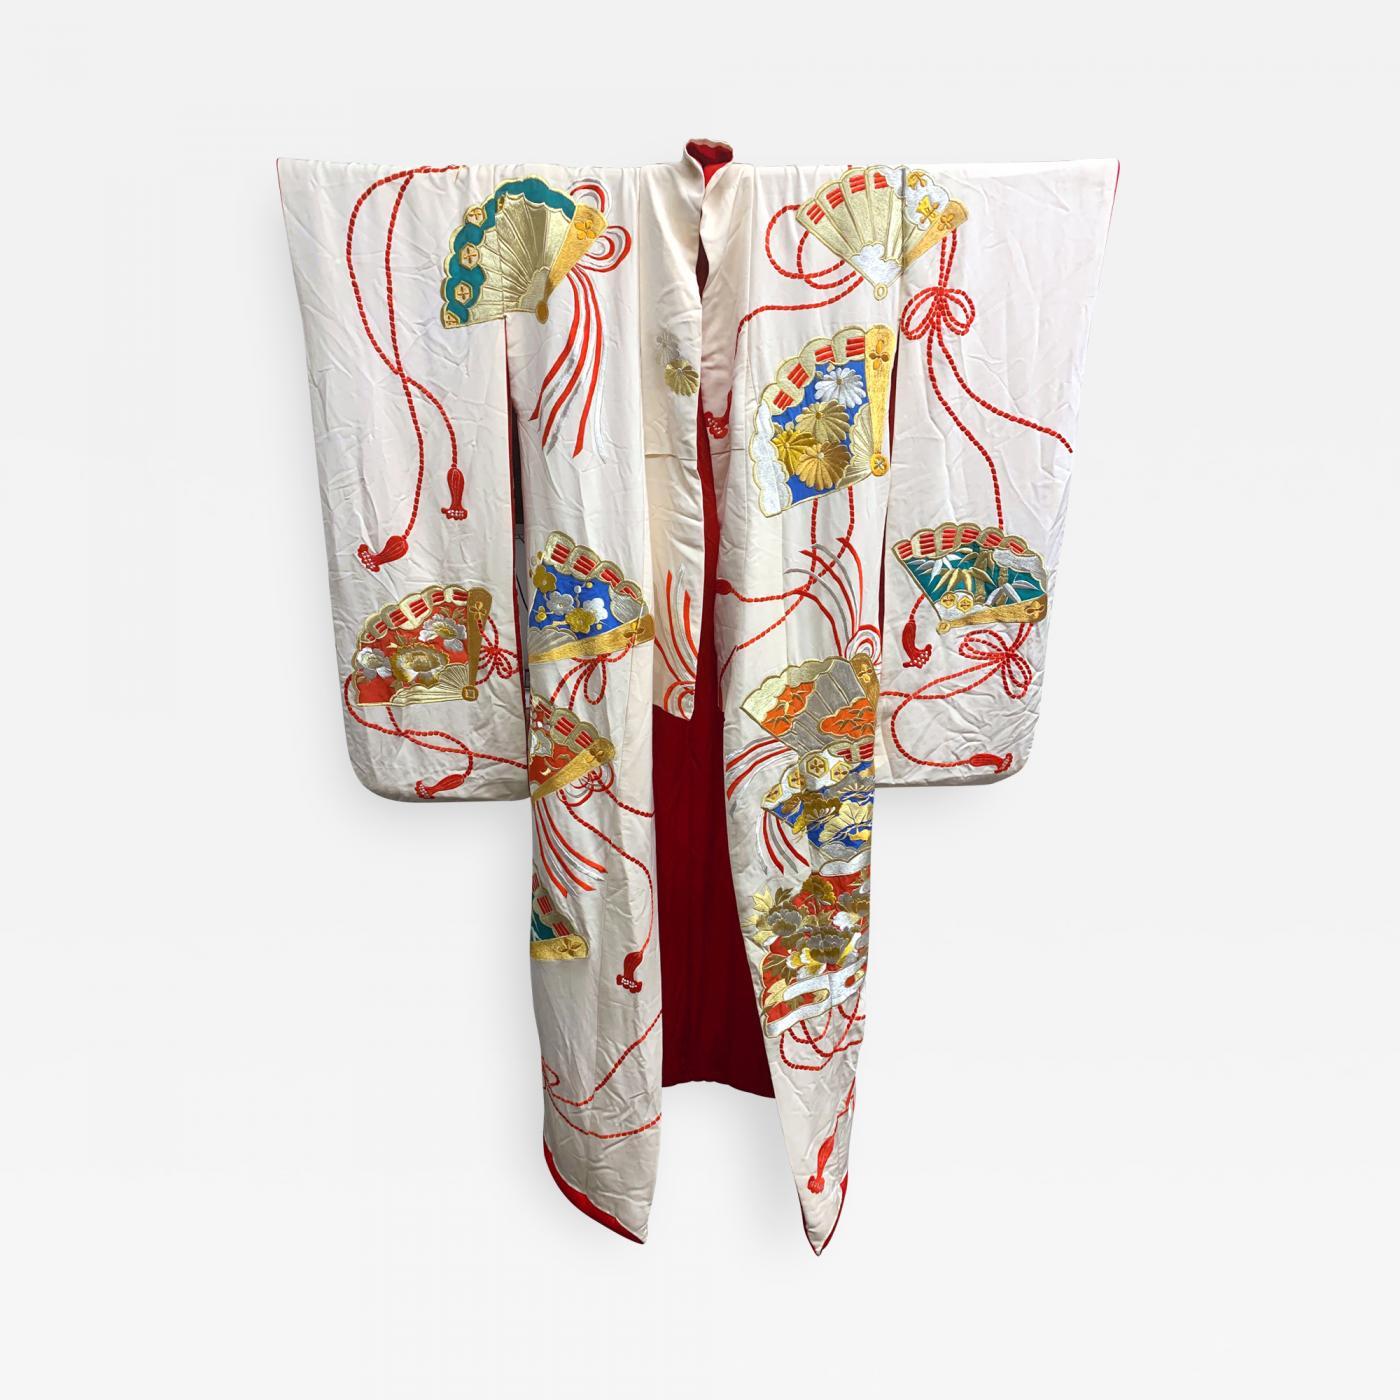 Ein optisch auffälliger Uchikake-Hochzeitskimono/Robe für feierliche Anlässe, ca. 1930-1950er Jahre, im orientalischen Art-Déco-Stil. Das Brautkleid aus cremeweißer Seide weist eine aufwendige und komplizierte Stickerei mit Motiven von